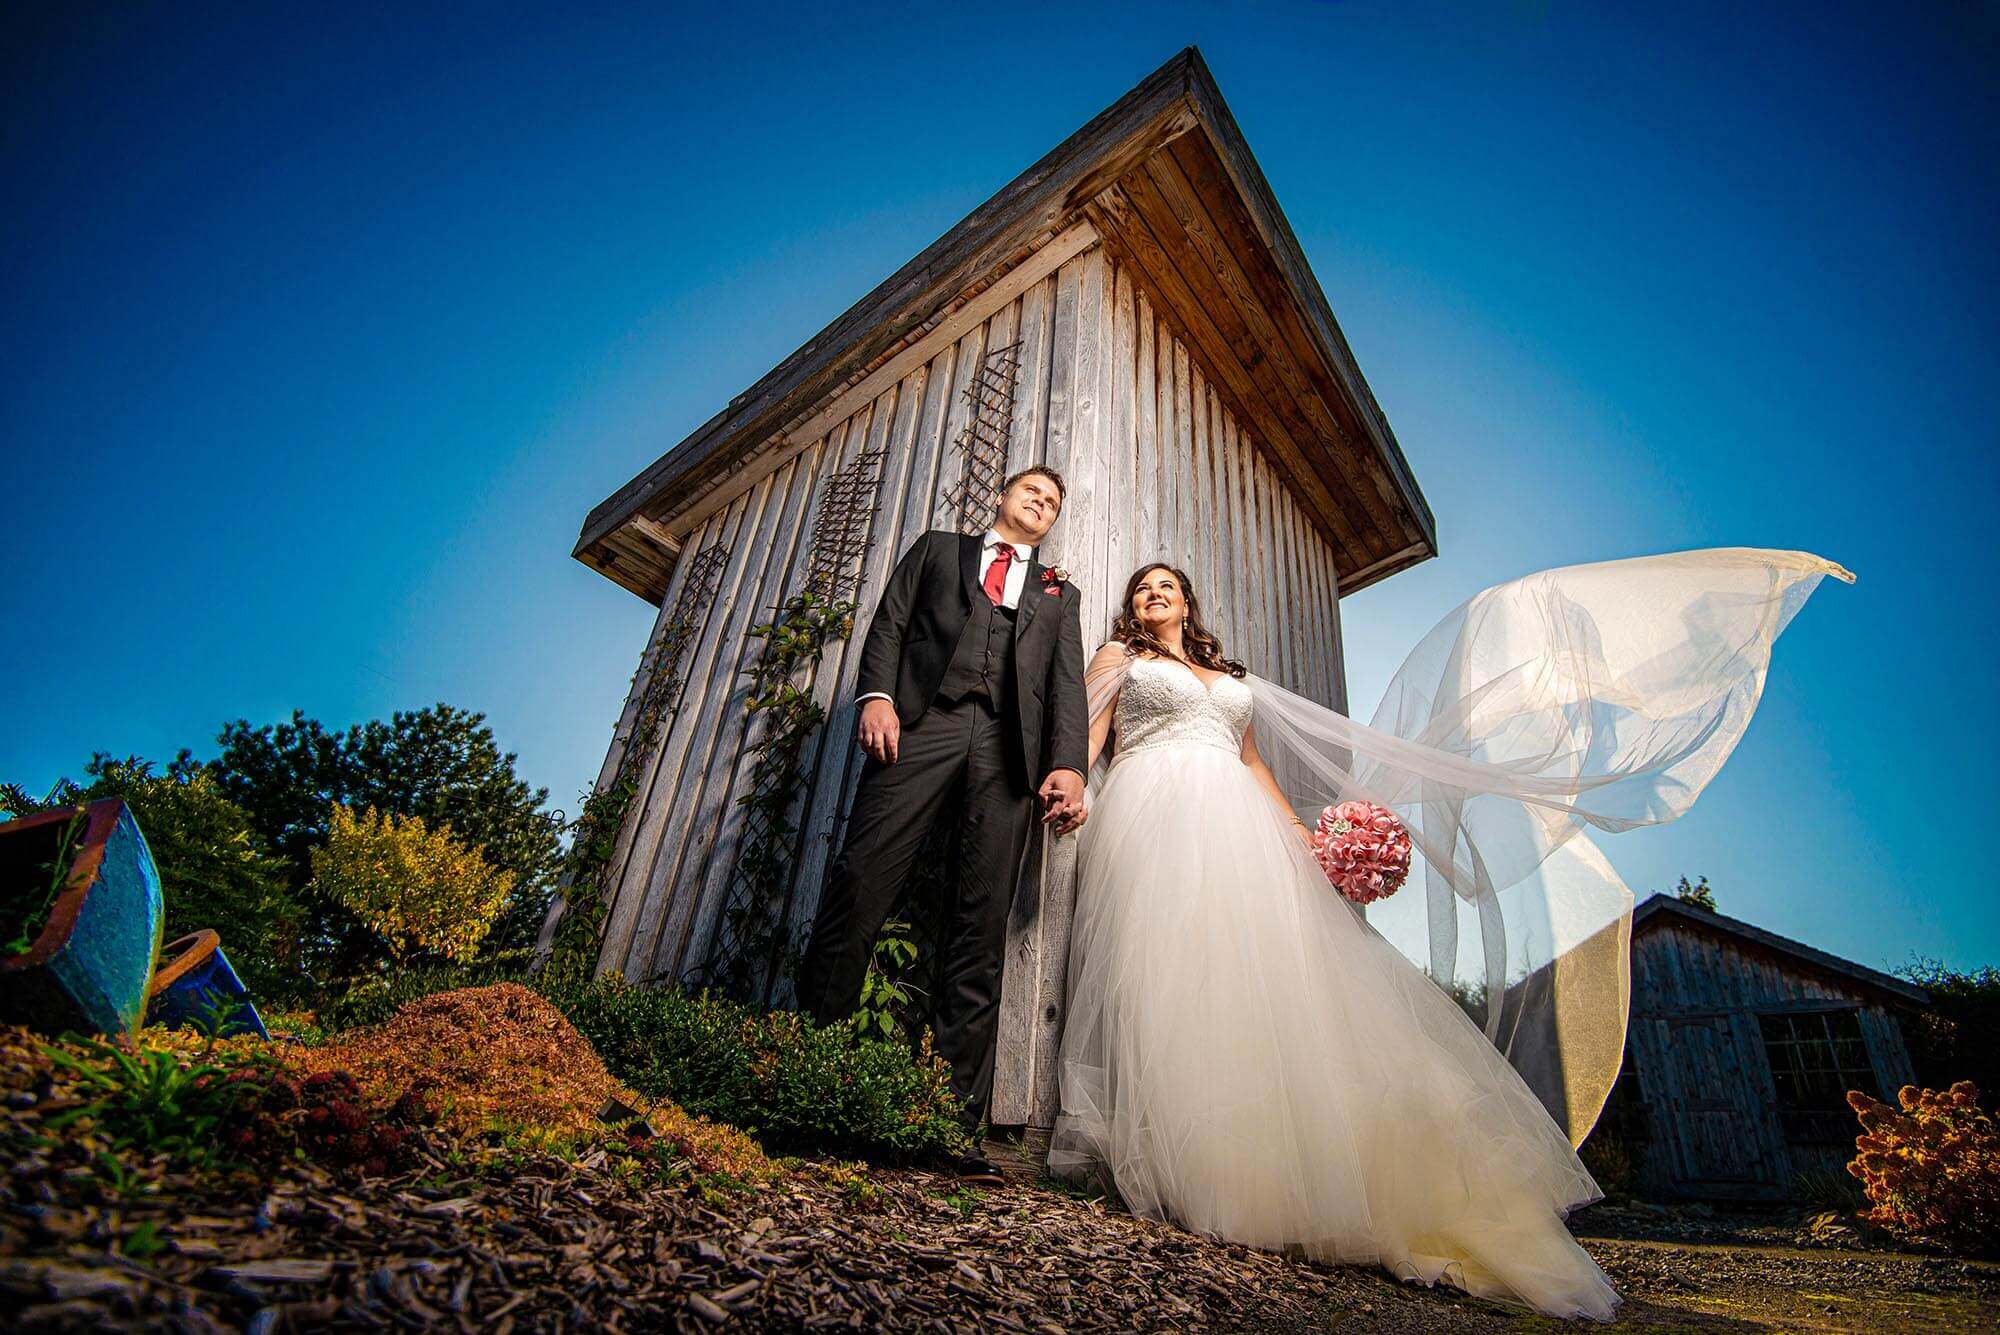 WEDDING PHOTOGRAPHY ADVICE - 15 Creative Wedding Photo Ideas For An Amateur  Photographer